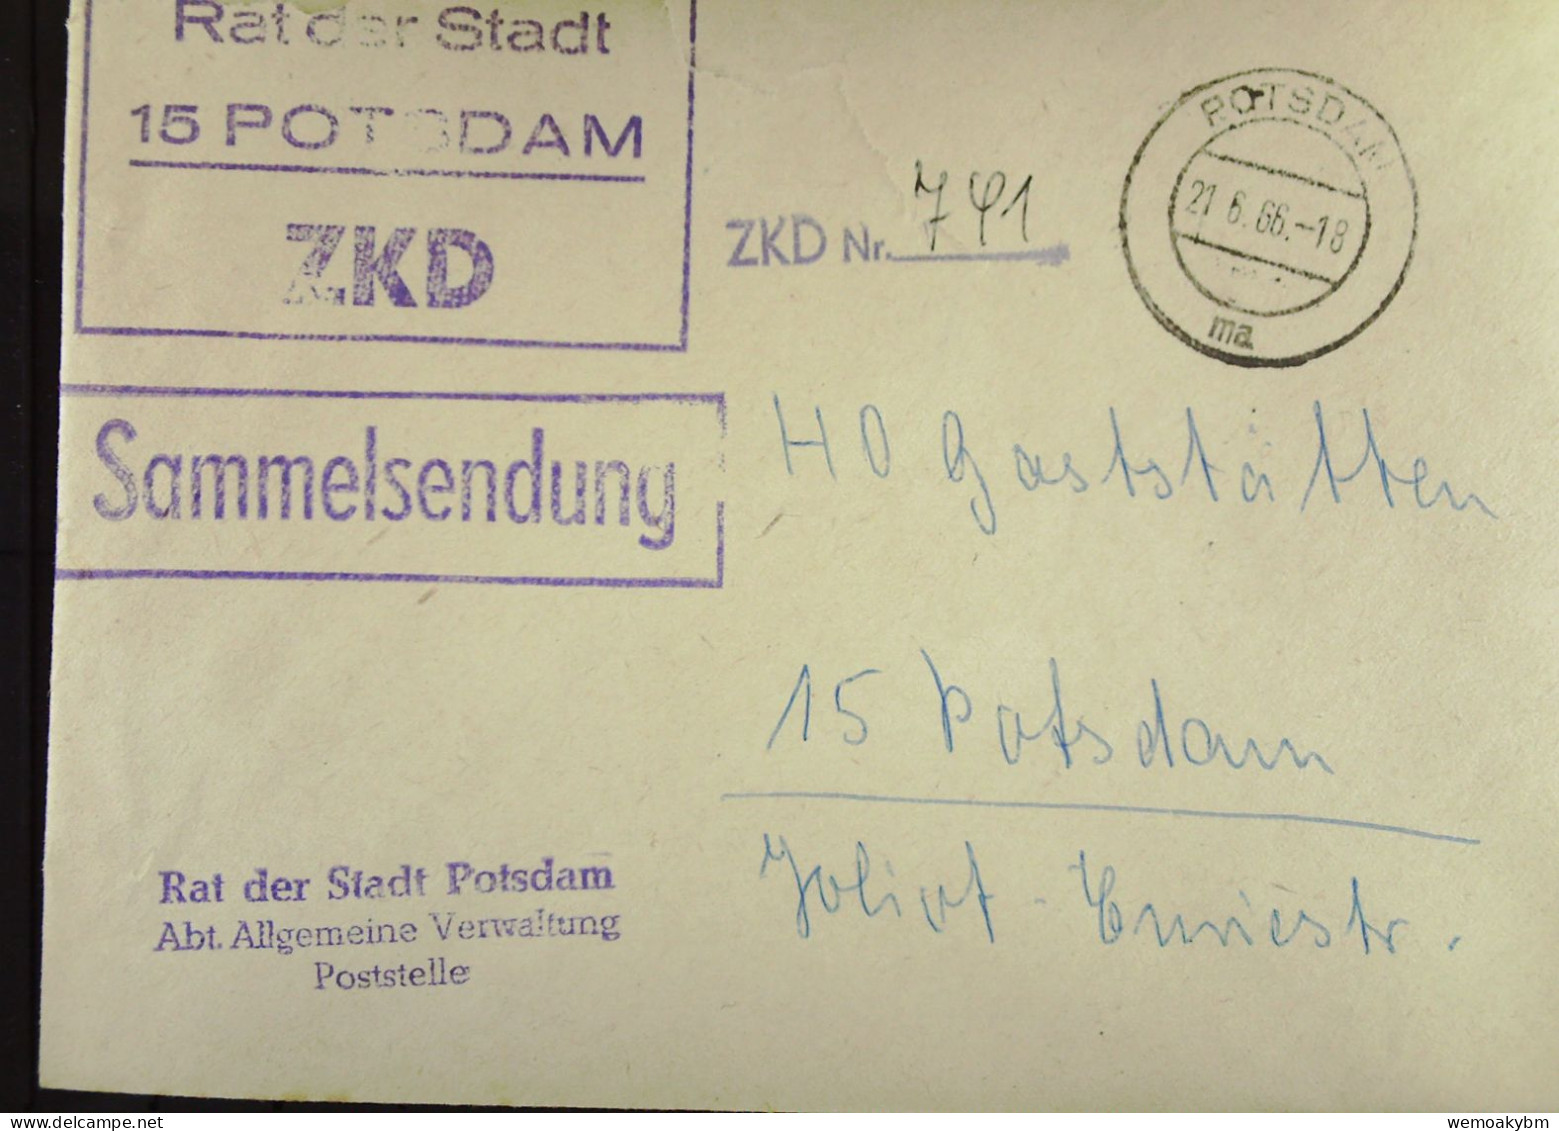 Orts-Brief Mit ZKD-Kastenst "Rat Der Stadt 15 POTSDAM" Vom 21.6.66 An HO Gaststätten Potsdam "Sammelsendung"-ZKD-Nr. 741 - Brieven En Documenten